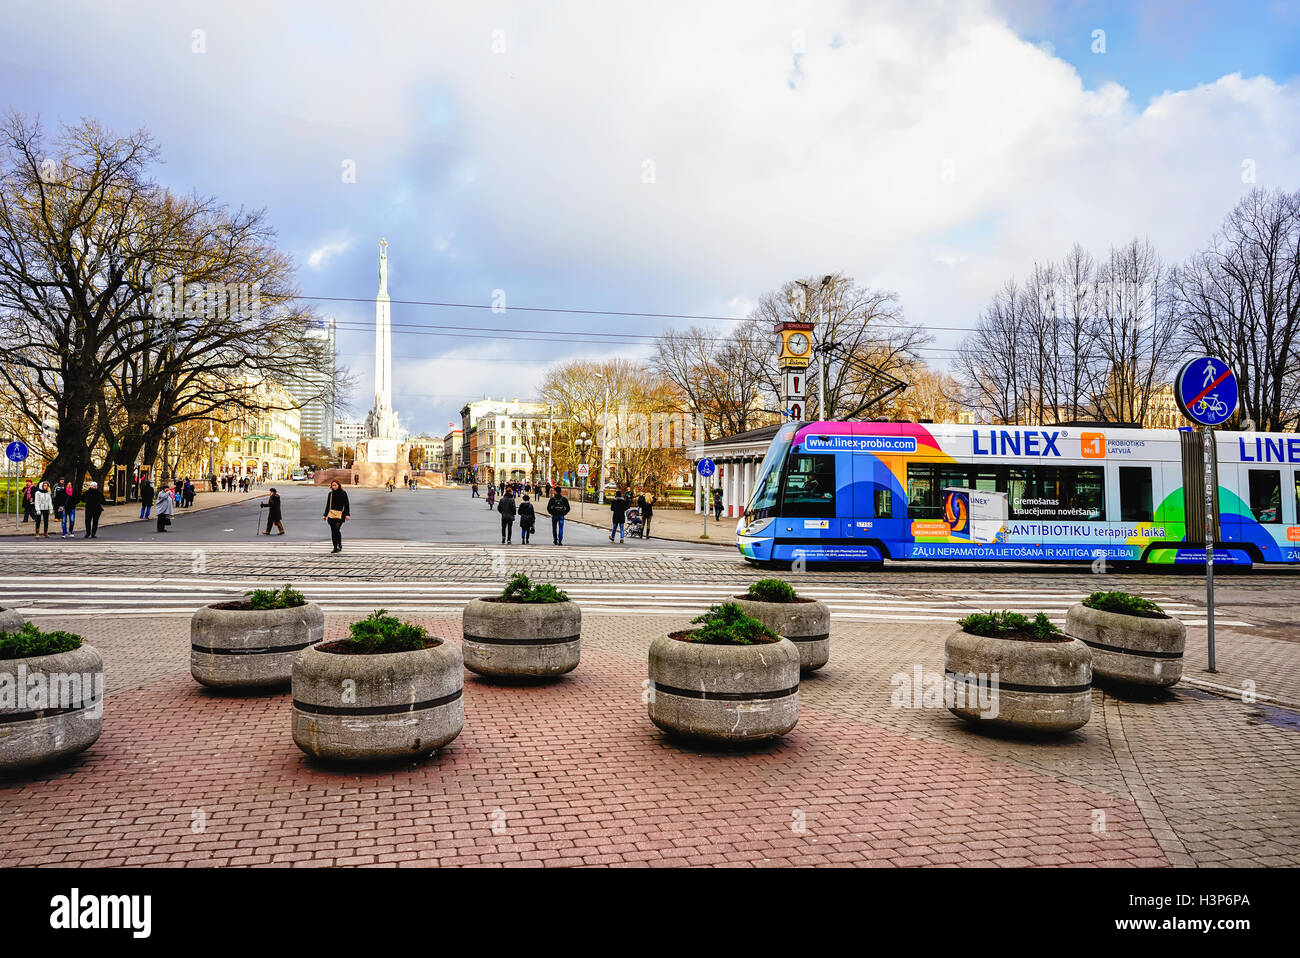 Riga, Lettland - 26. Dezember 2015: Straßenbahn und Menschen auf der Straße in der Altstadt von Riga, Hauptstadt Lettlands, an Weihnachten. Kein Schnee, kein Wind, nur Sonne. Stockfoto